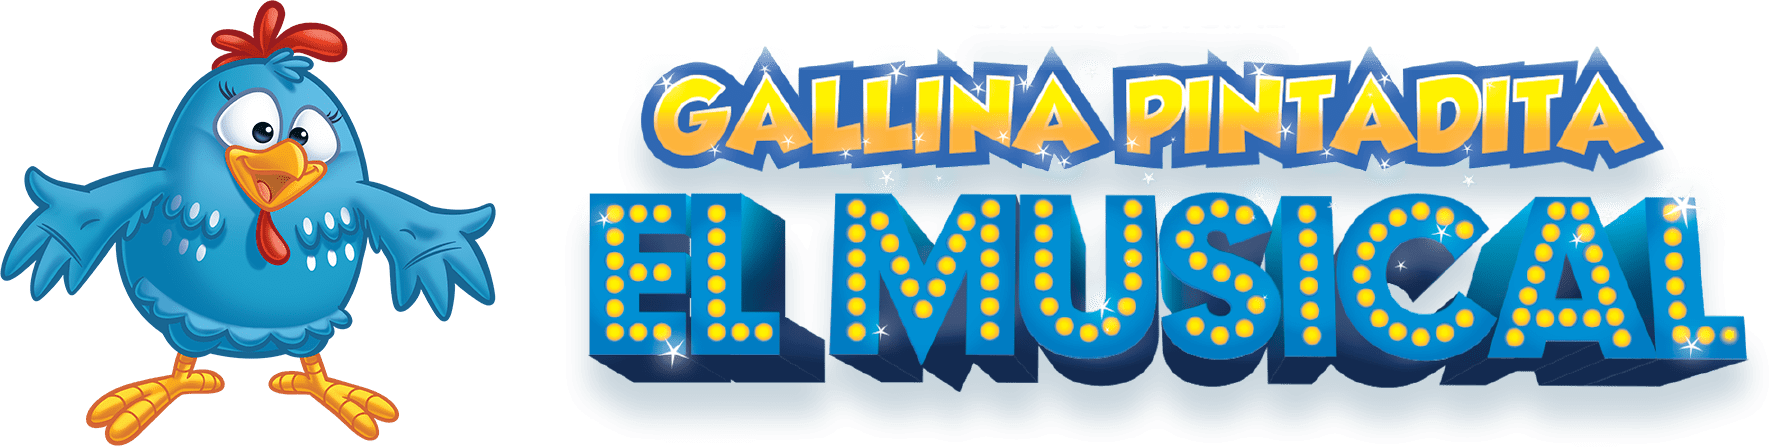 Gallina Pintadita: El Musical - Agenda del Show Oficial de la Gallina Pintadita